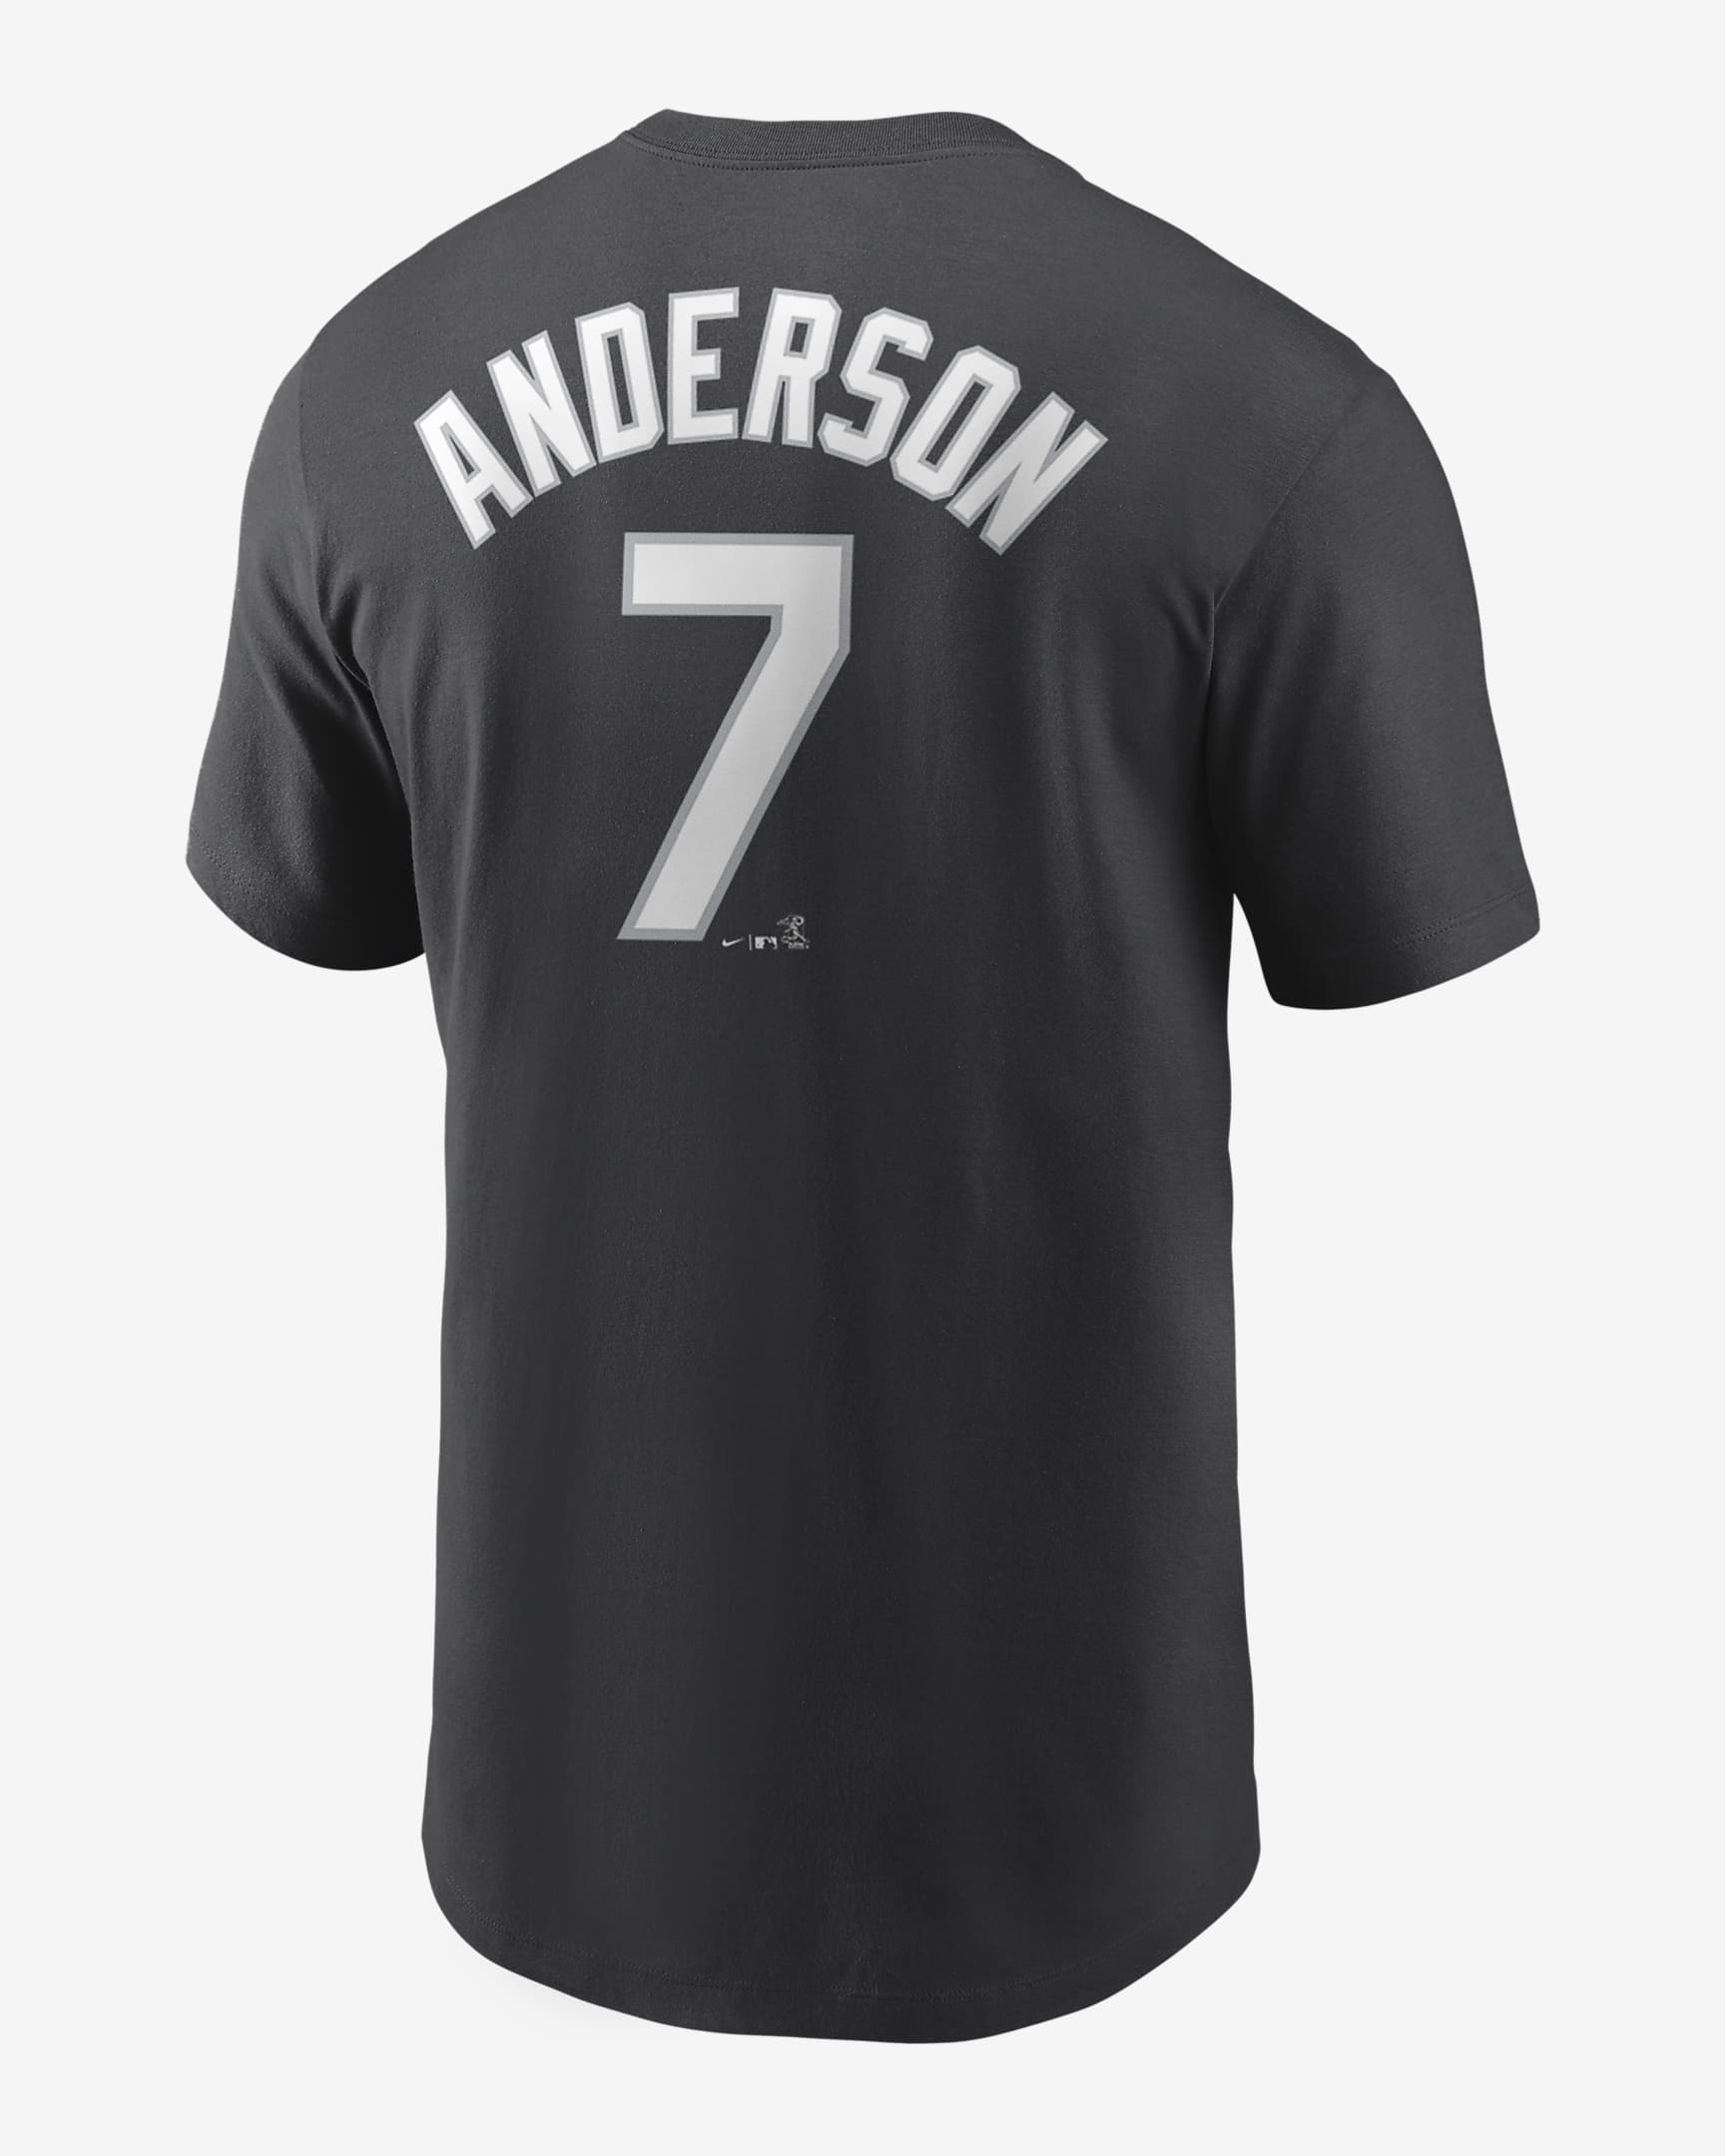 Playera para hombre MLB Chicago White Sox (Tim Anderson). Nike.com